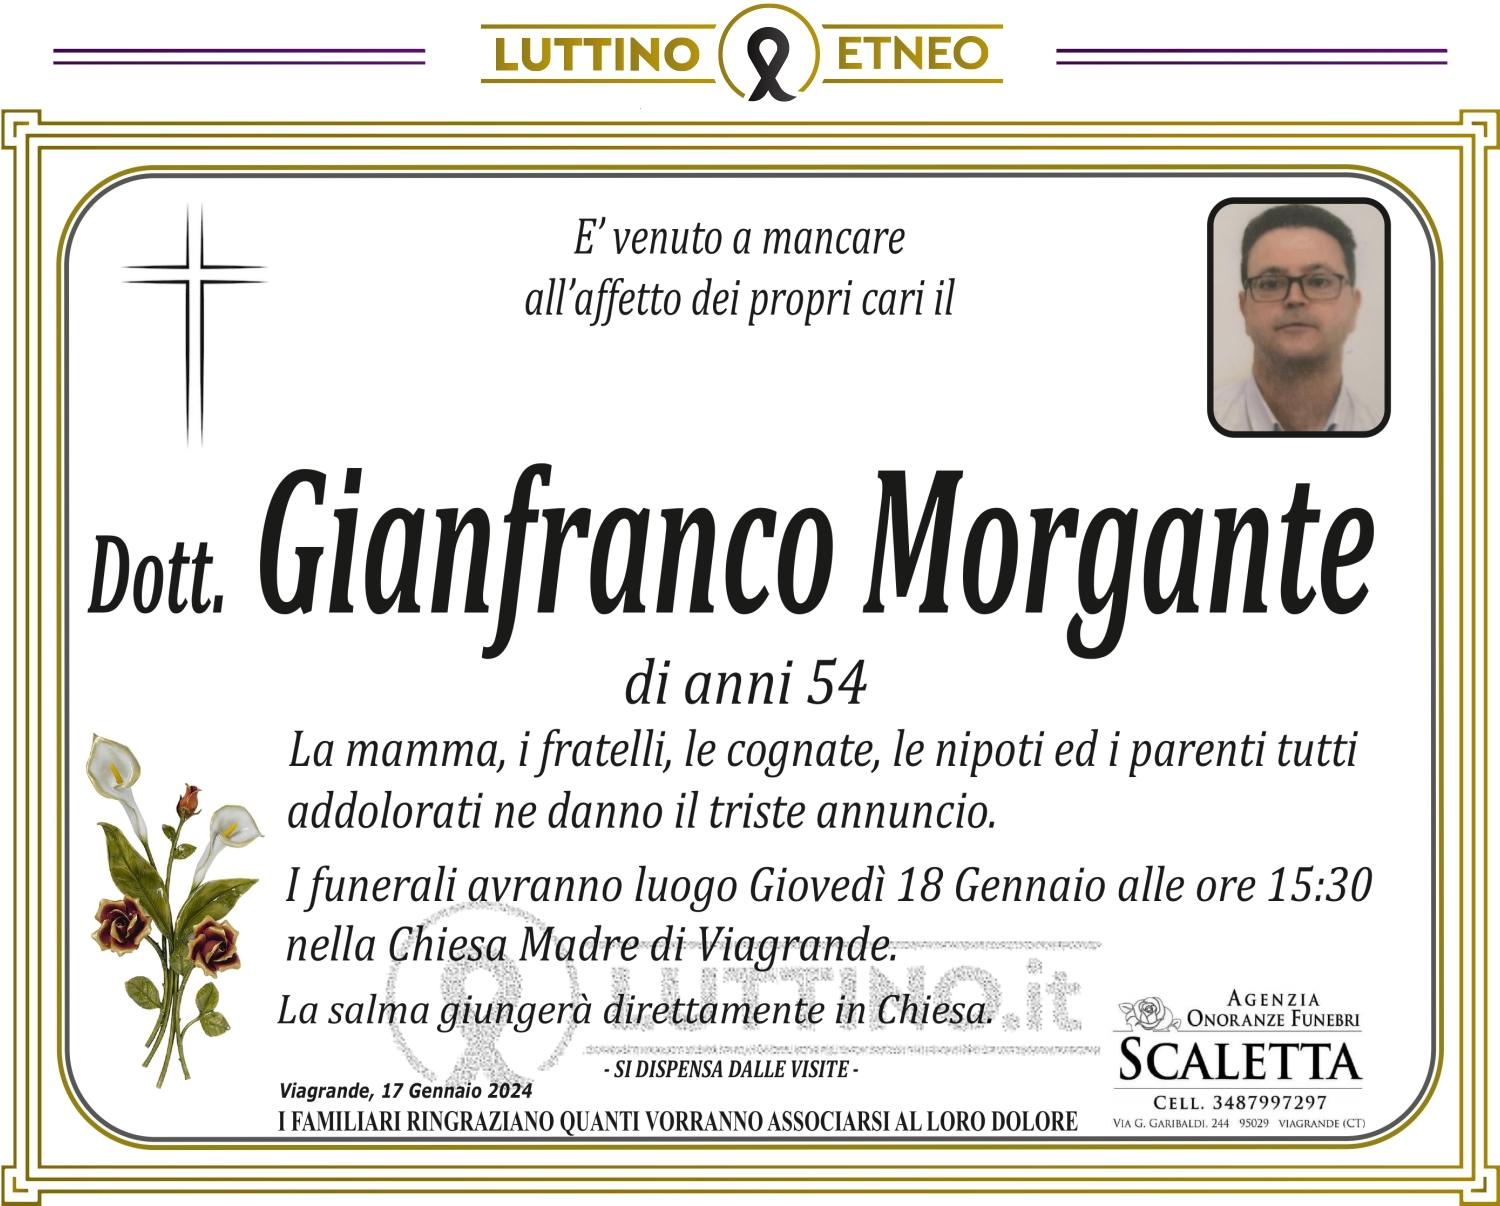 Gianfranco Morgante